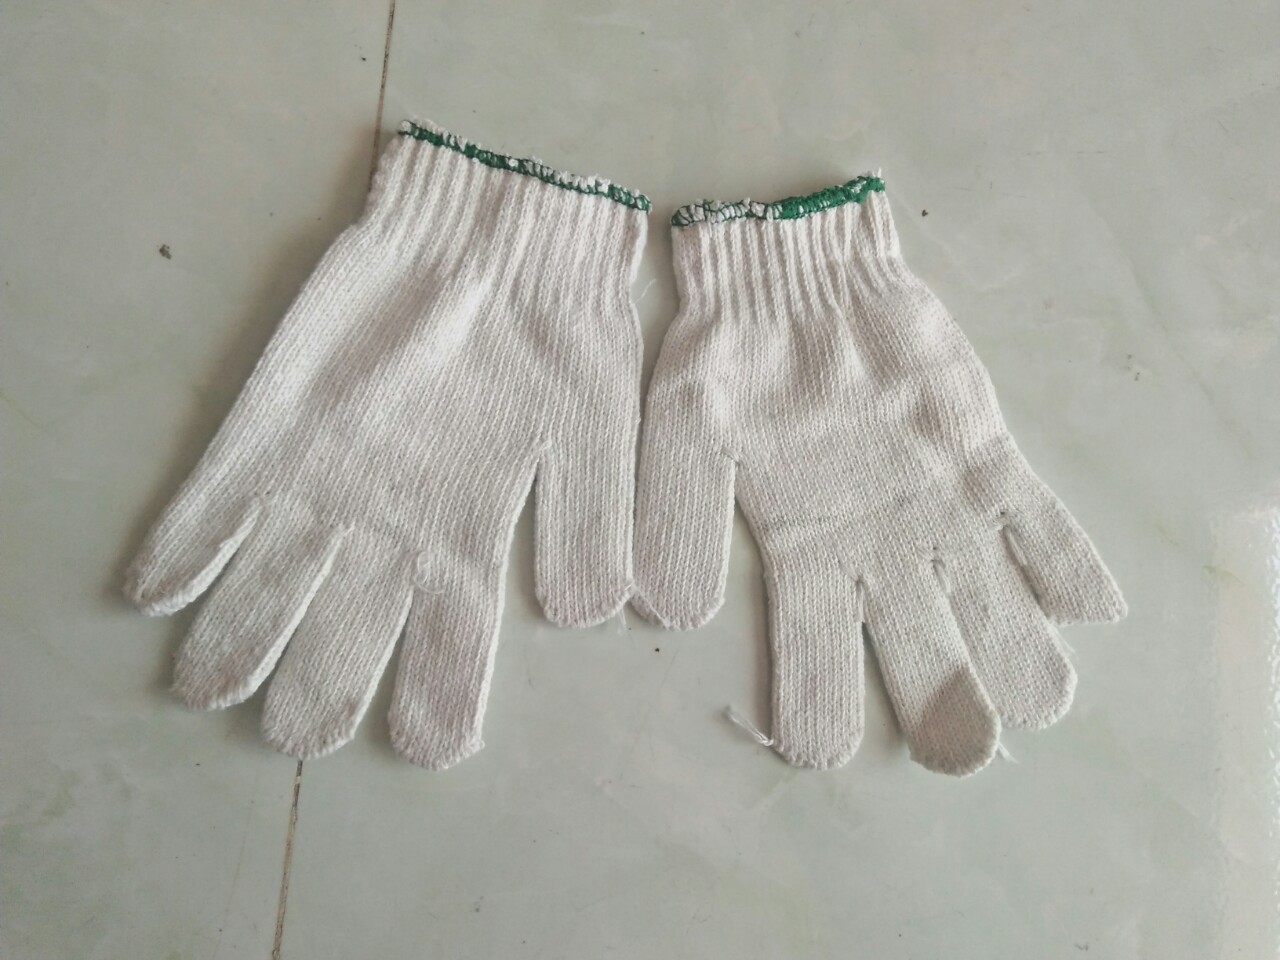 Găng tay len kem - Bảo Hộ Lao Động Tiến Phát - Công Ty TNHH An Toàn Bảo Hộ Lao Động Tiến Phát